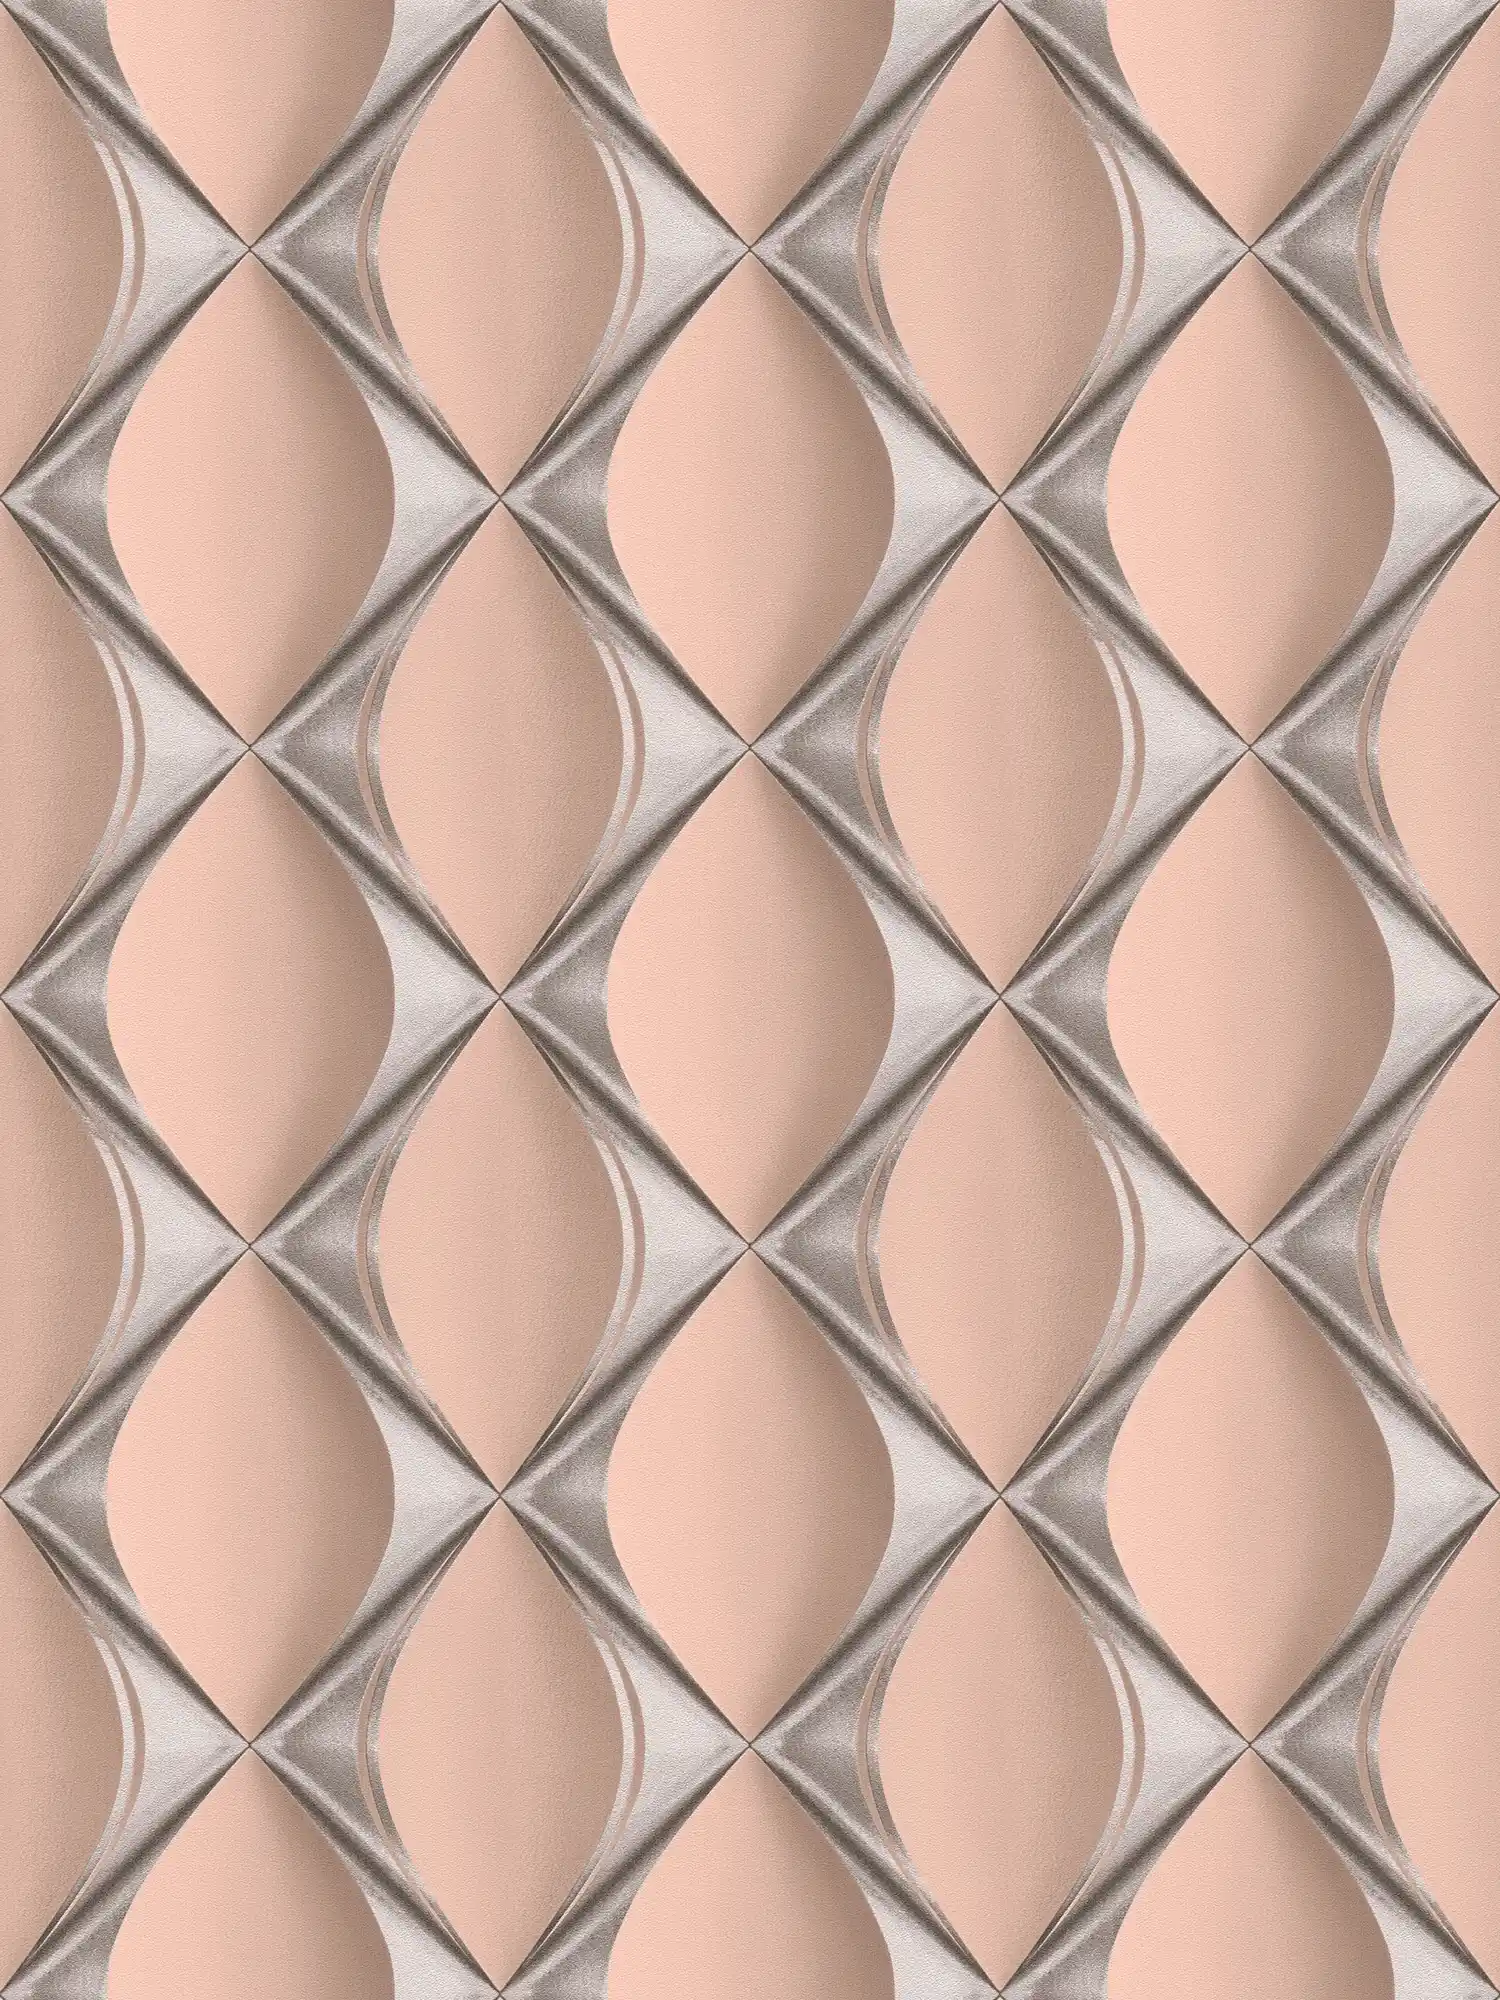 Design wallpaper 3D with metallic diamond pattern - pink, metallic
